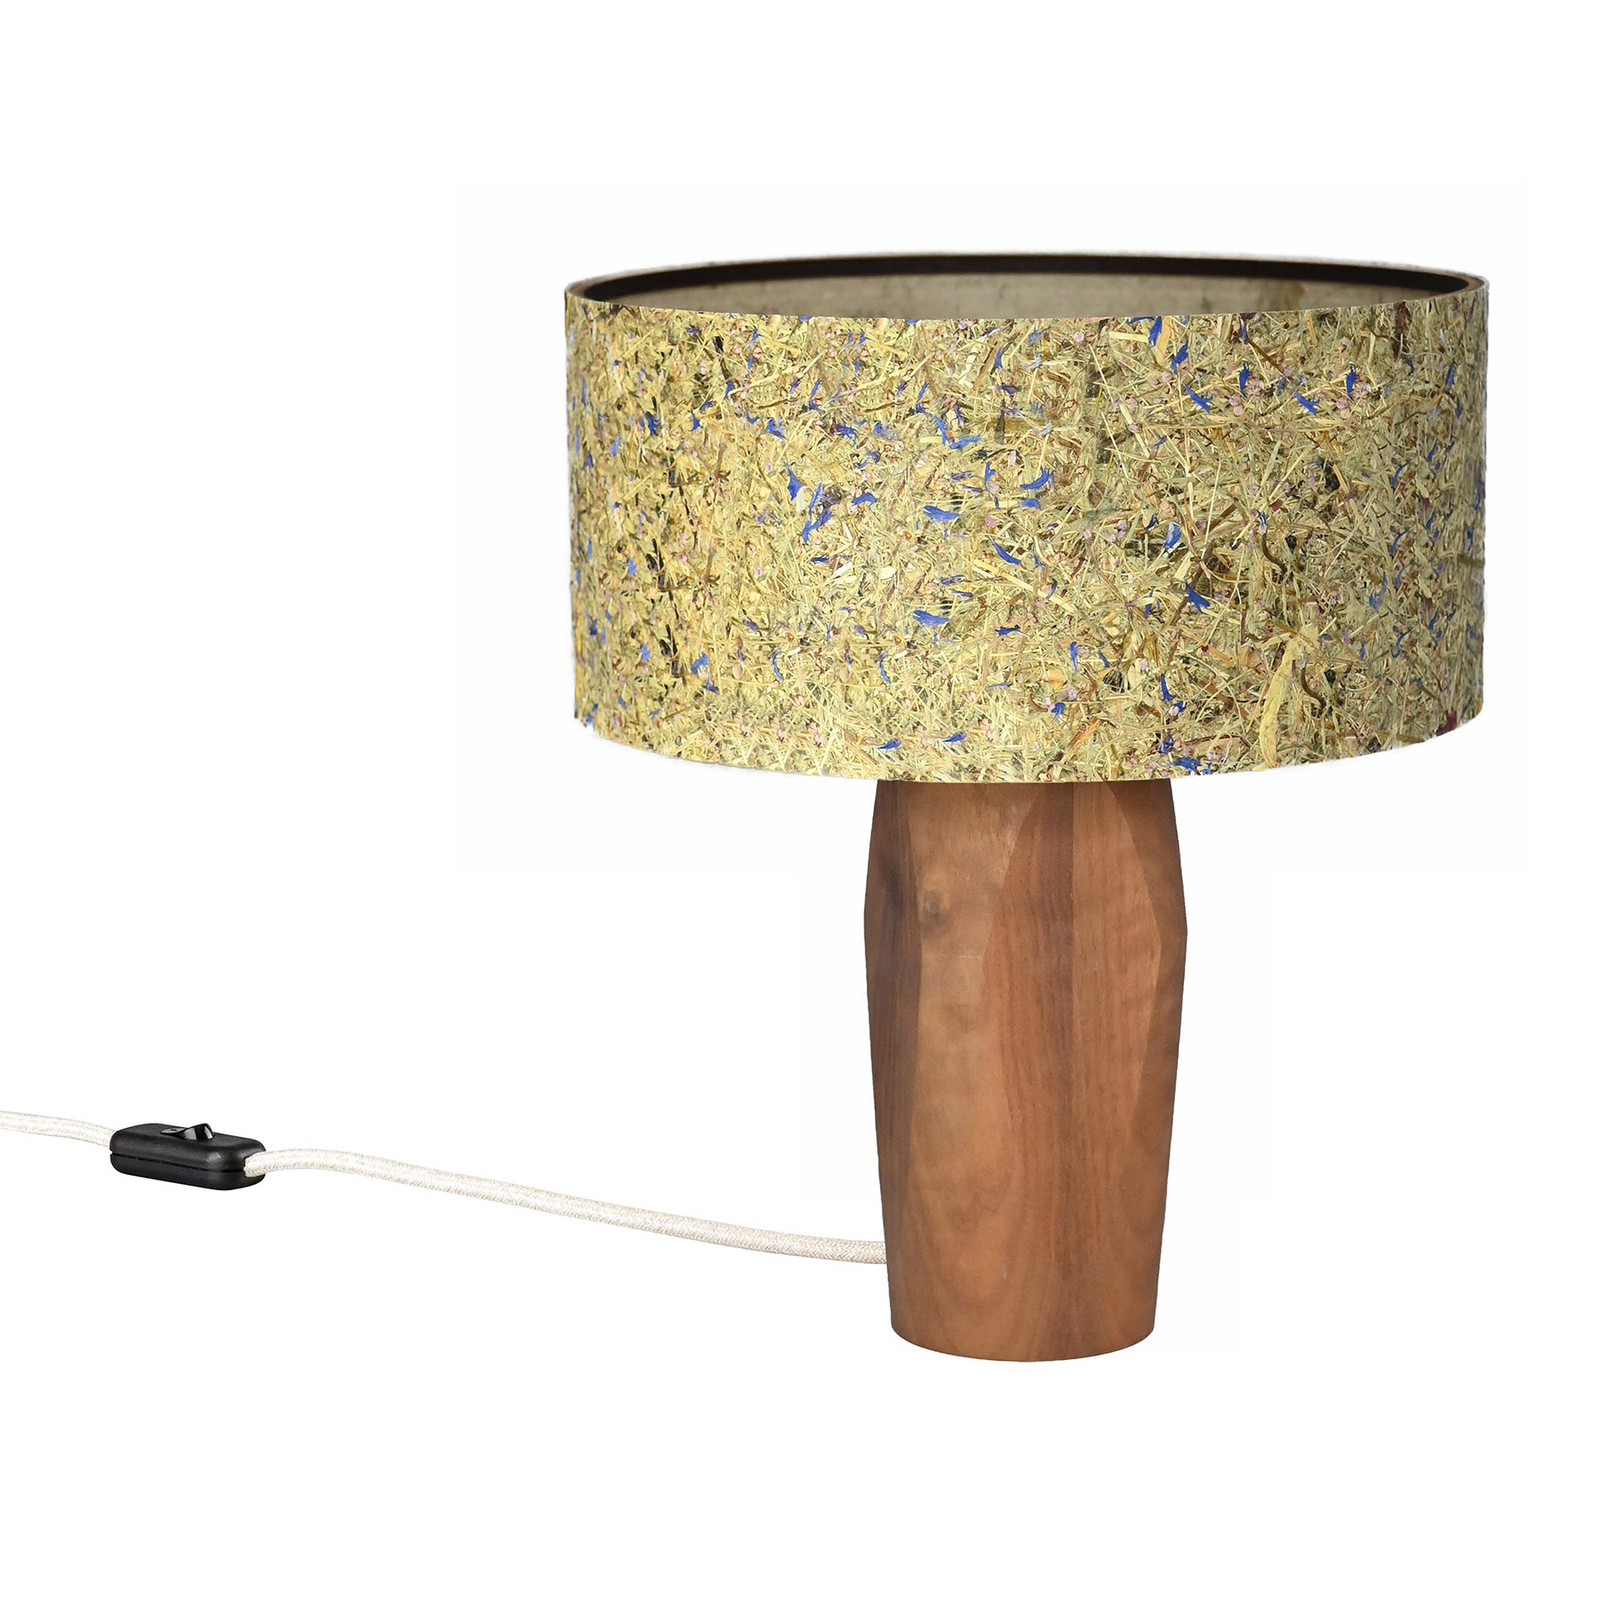 LeuchtNatur Pura LED-Tischlampe Nussbaum/Kornblume